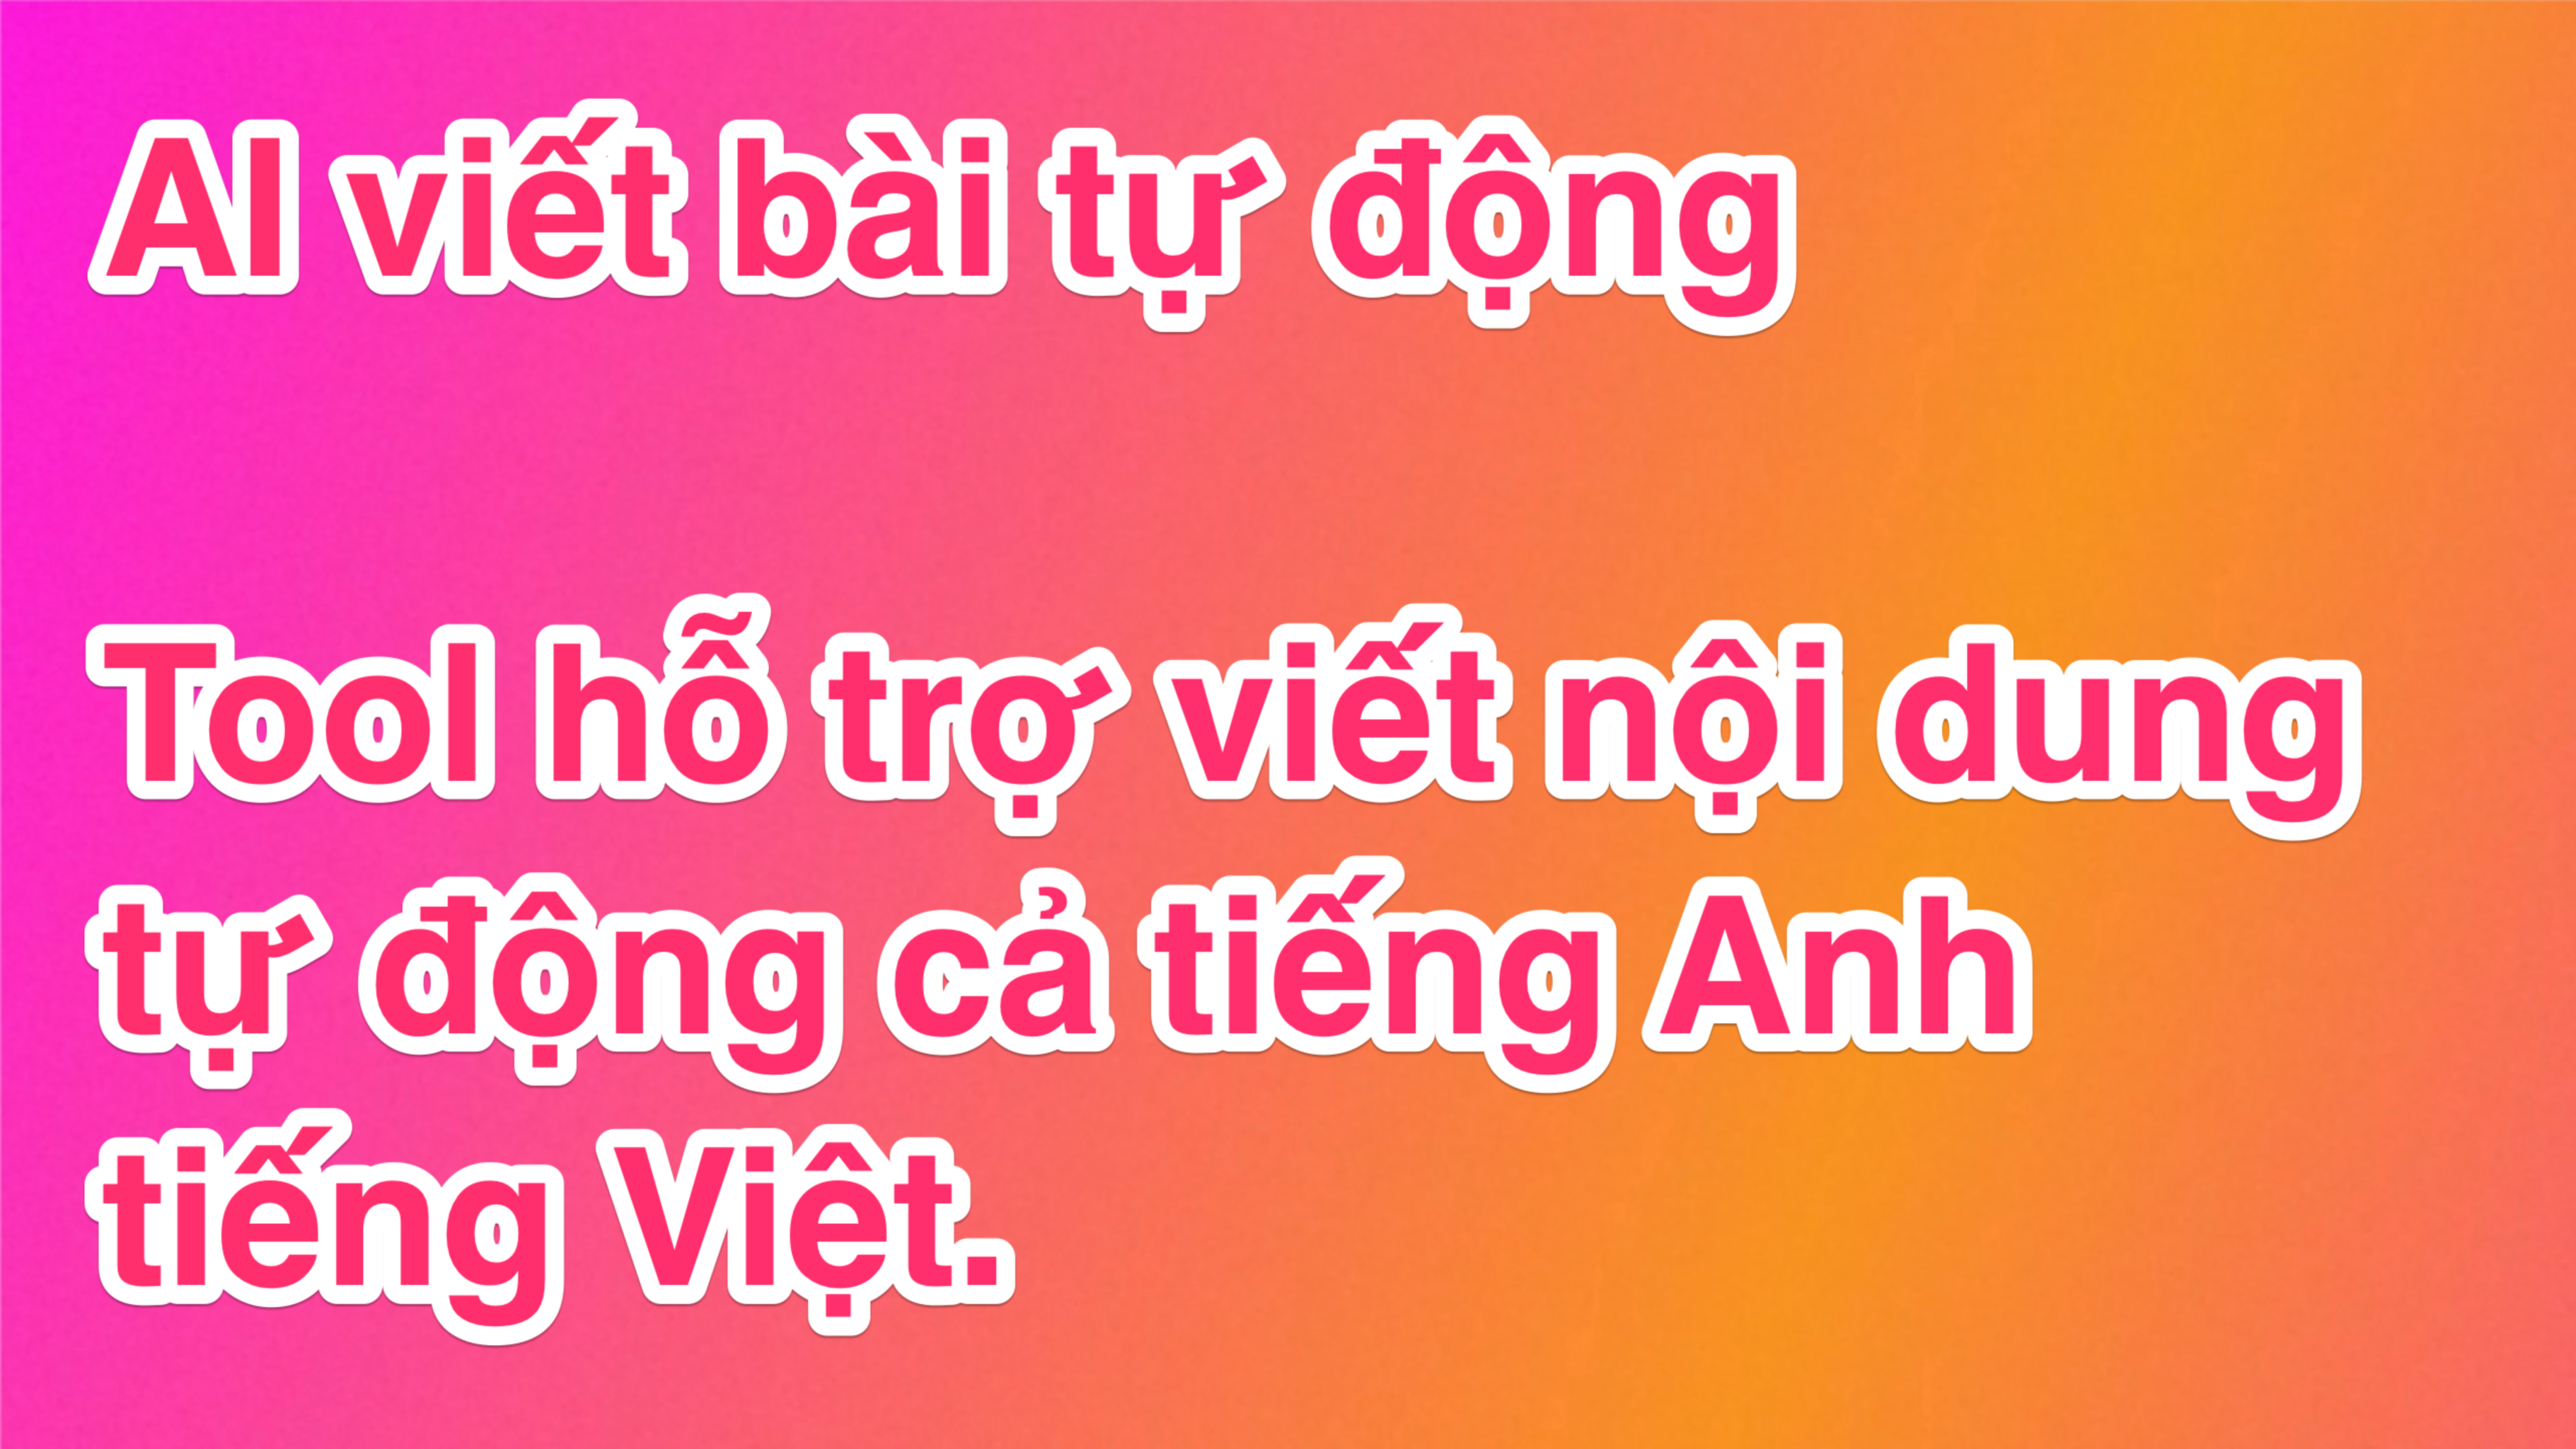 AI-viet-bai-tu-dong.png